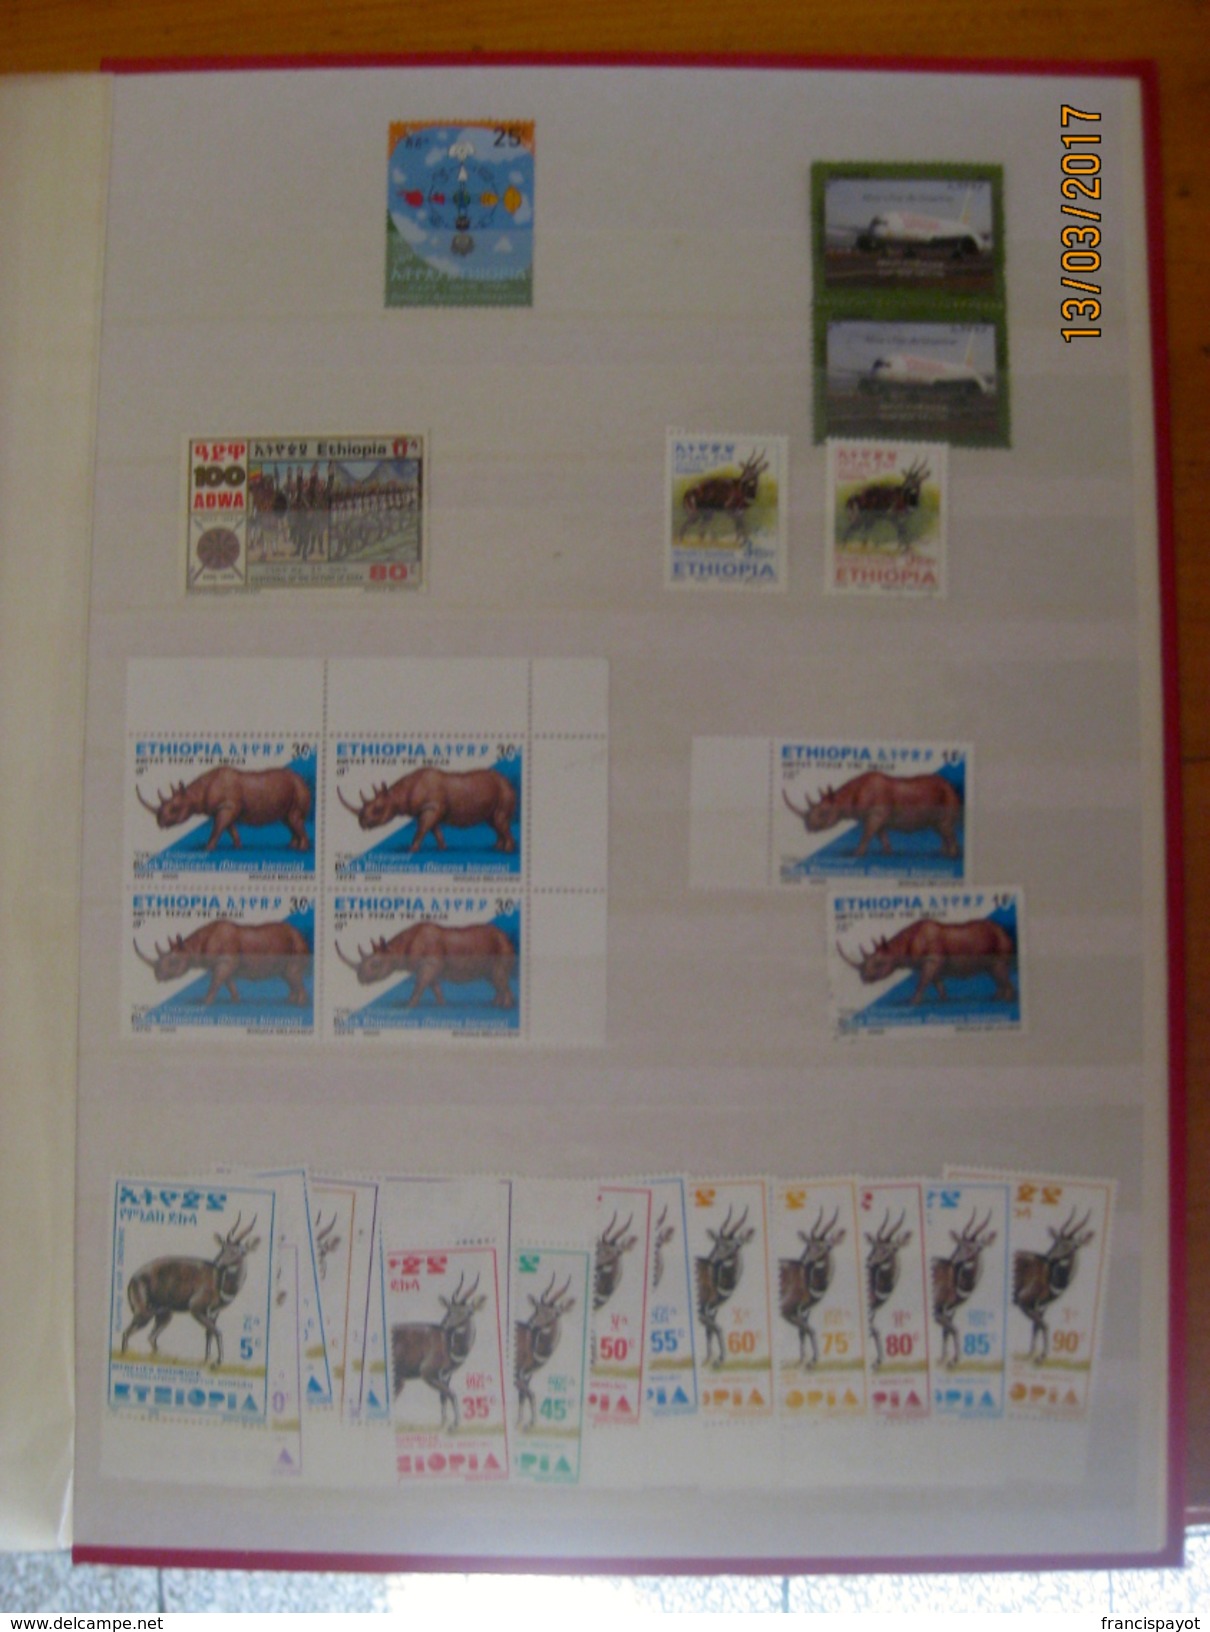 Ethiopie 190 timbres + 1 bloc